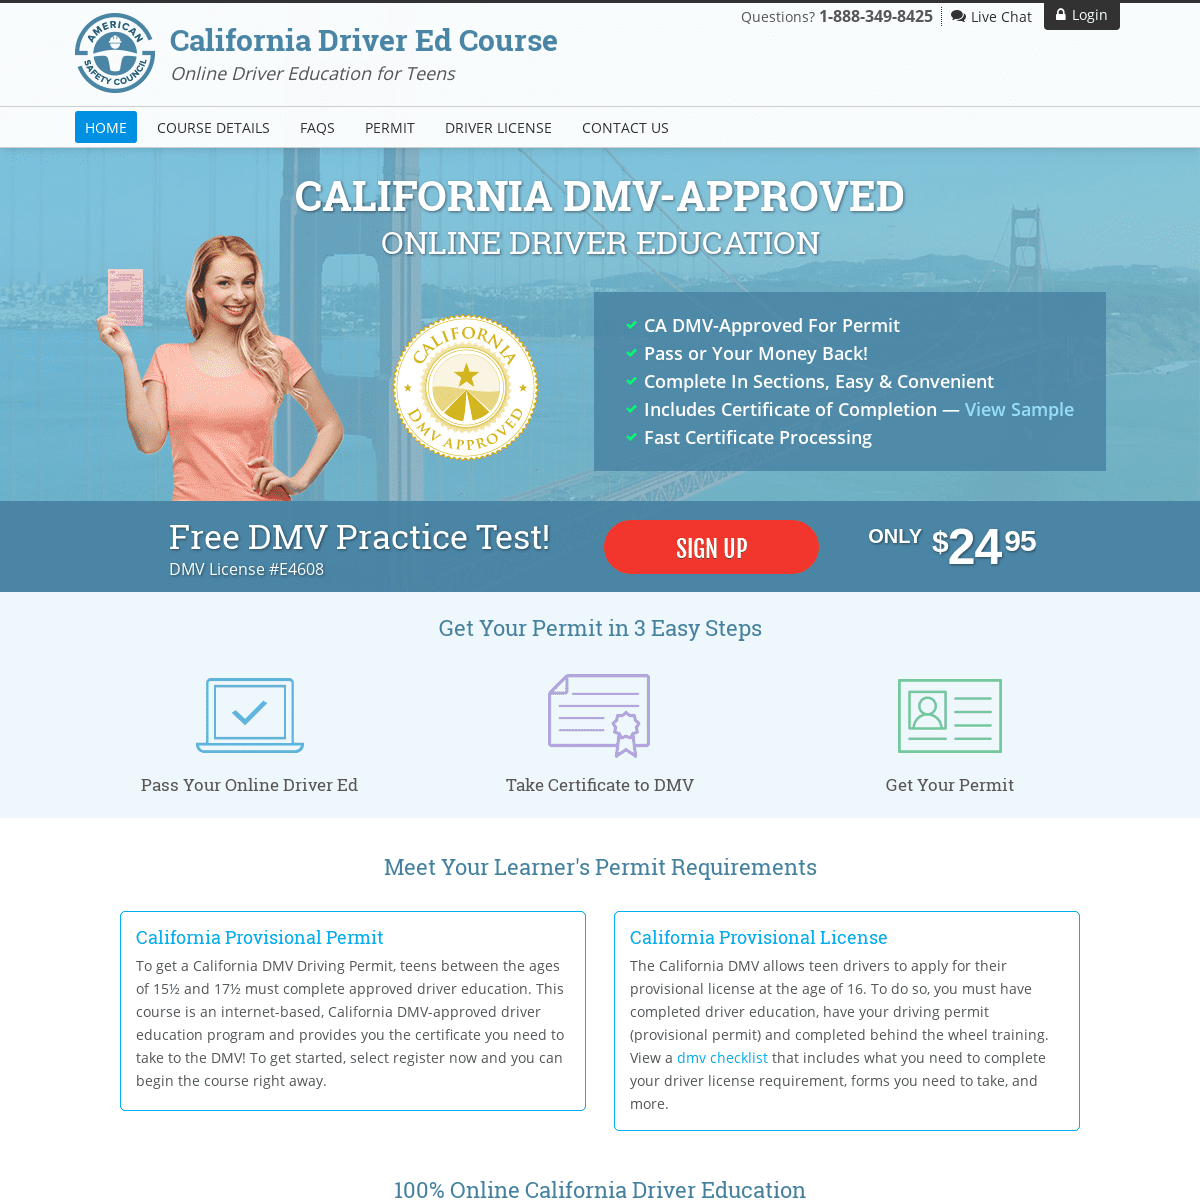 A complete backup of californiadriveredcourse.com